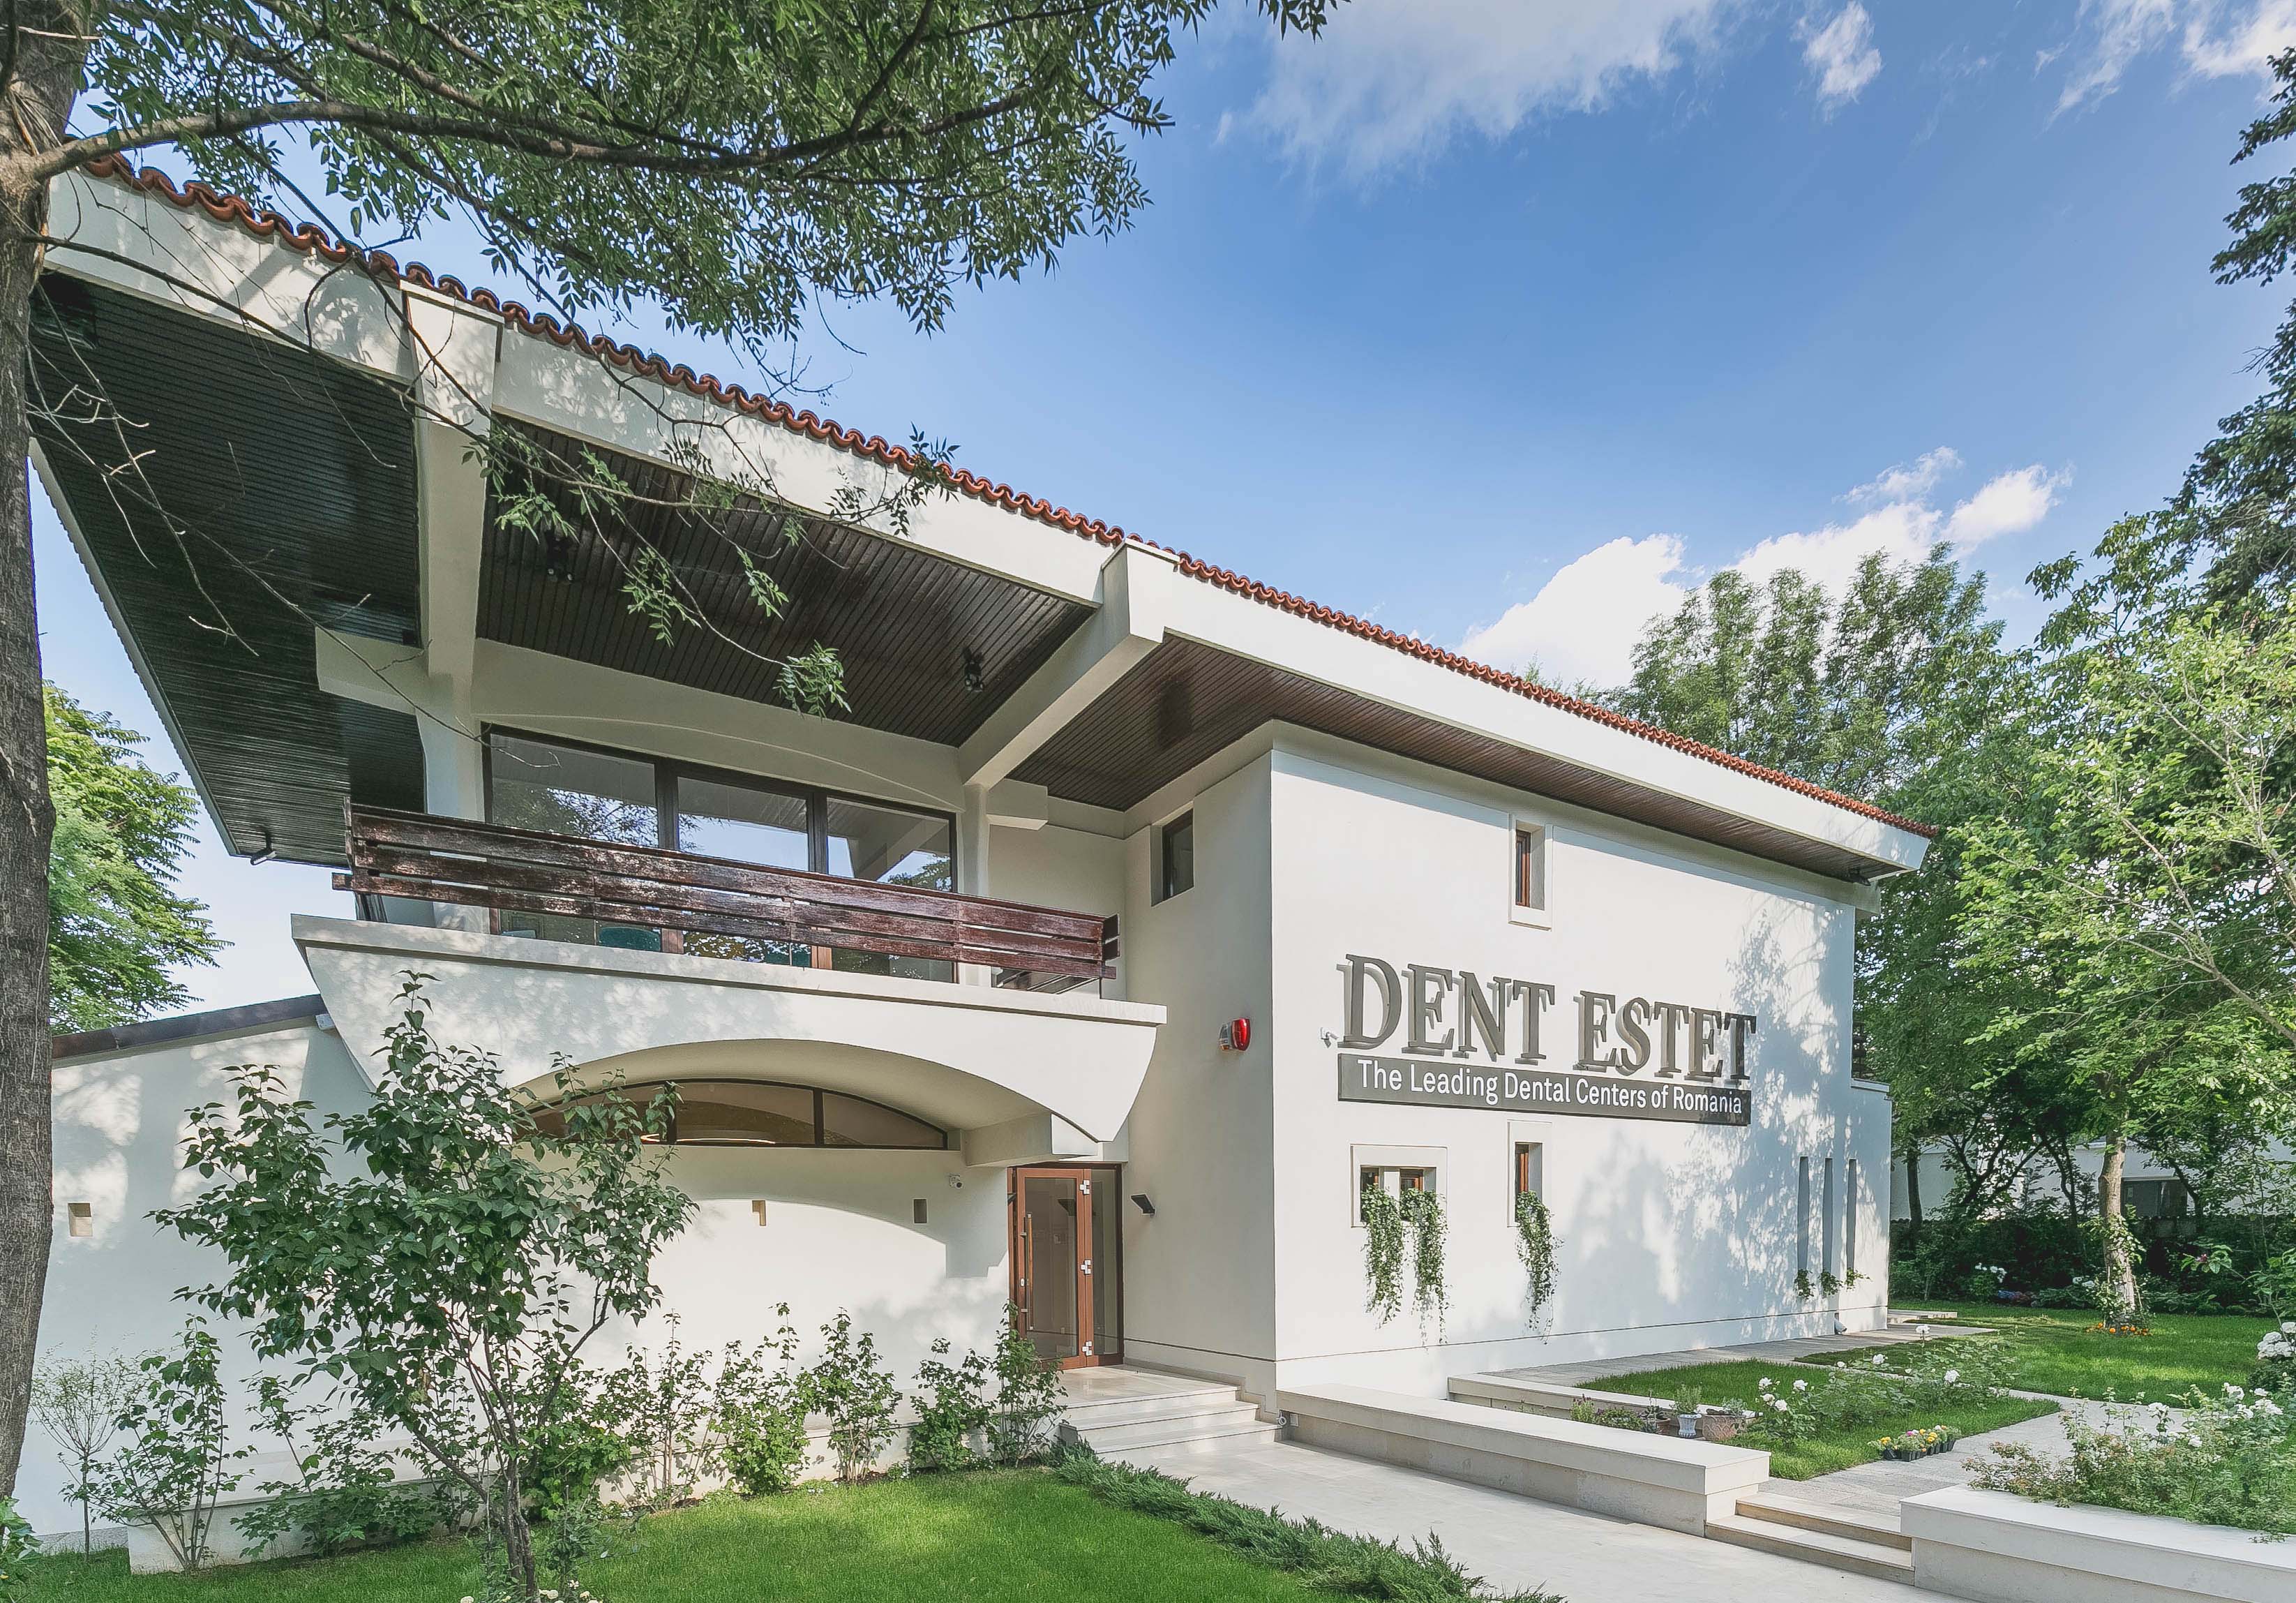 Reţeaua Dent Estet a ajuns la 25 ani prezenţă pe piaţă. Cum arată amprenta clinicilor stomatologice în România şi care sunt direcţiile de dezvoltare?